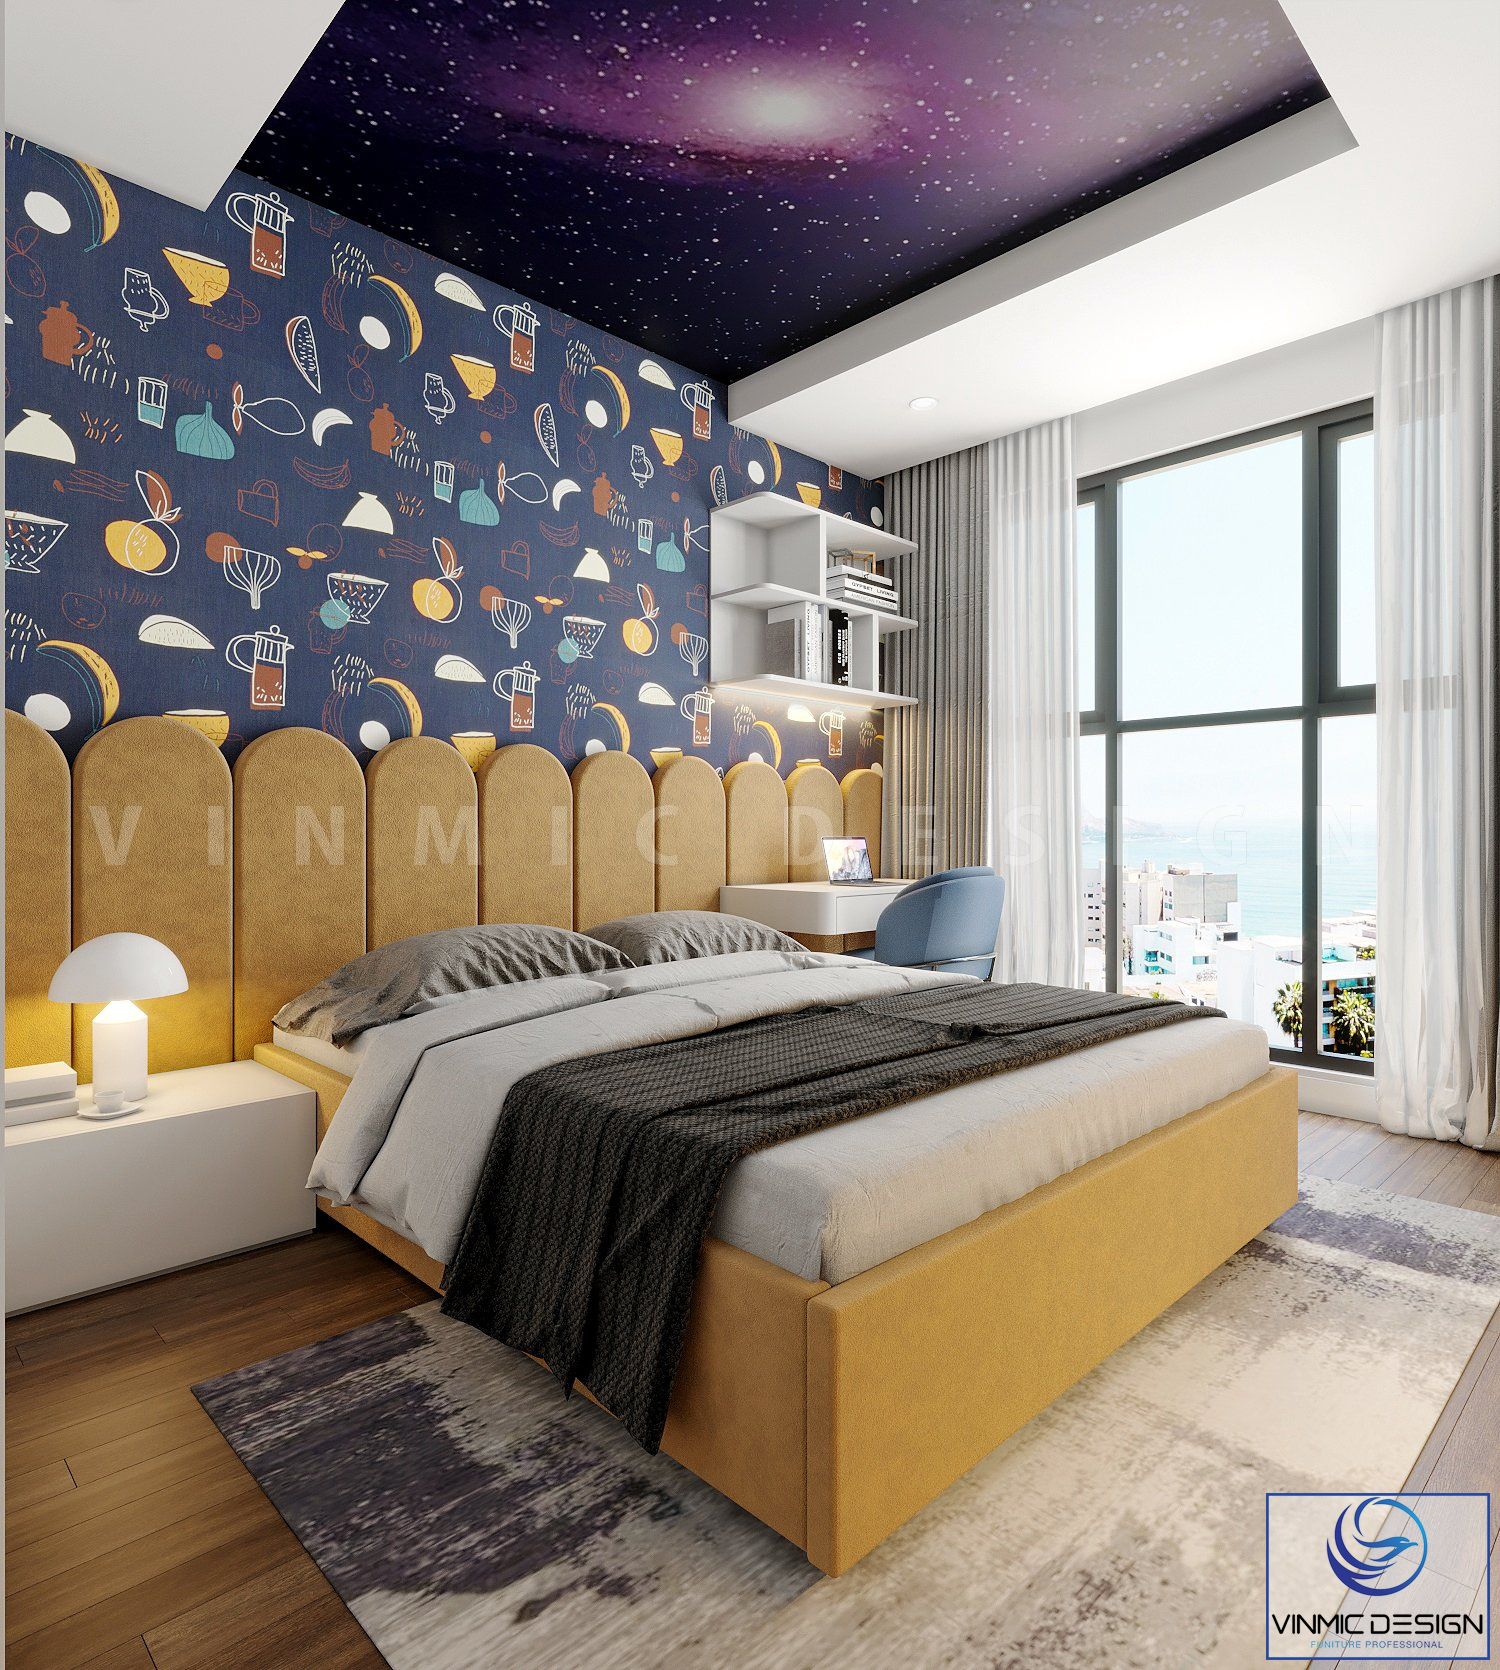 Thiết kế nội thất phòng ngủ cho bé yêu thích vũ trụ 